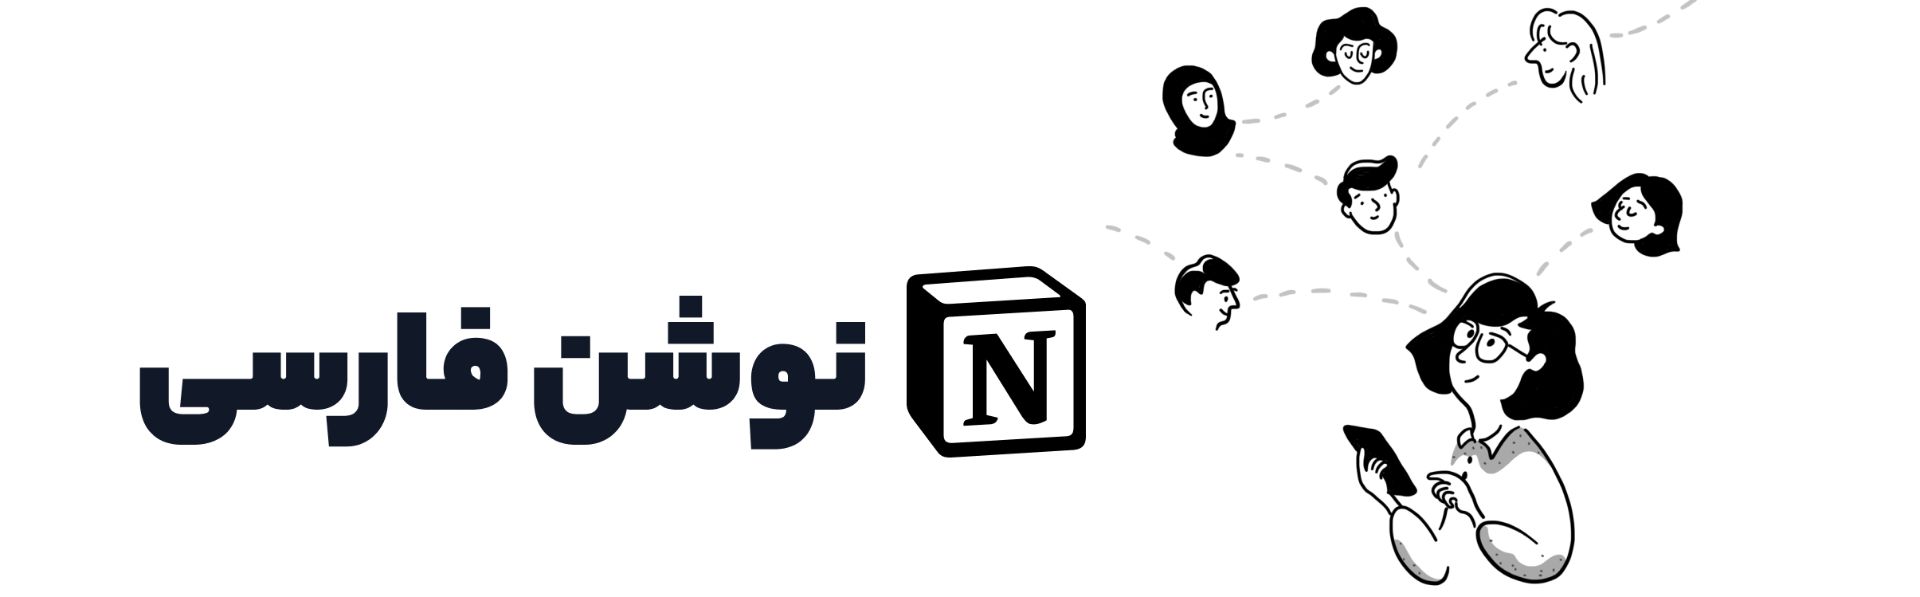 لوگو نوشن فارسی در کنار ظاهر انیمیشنی یک انسان در حال ارتباط با افراد دیگر